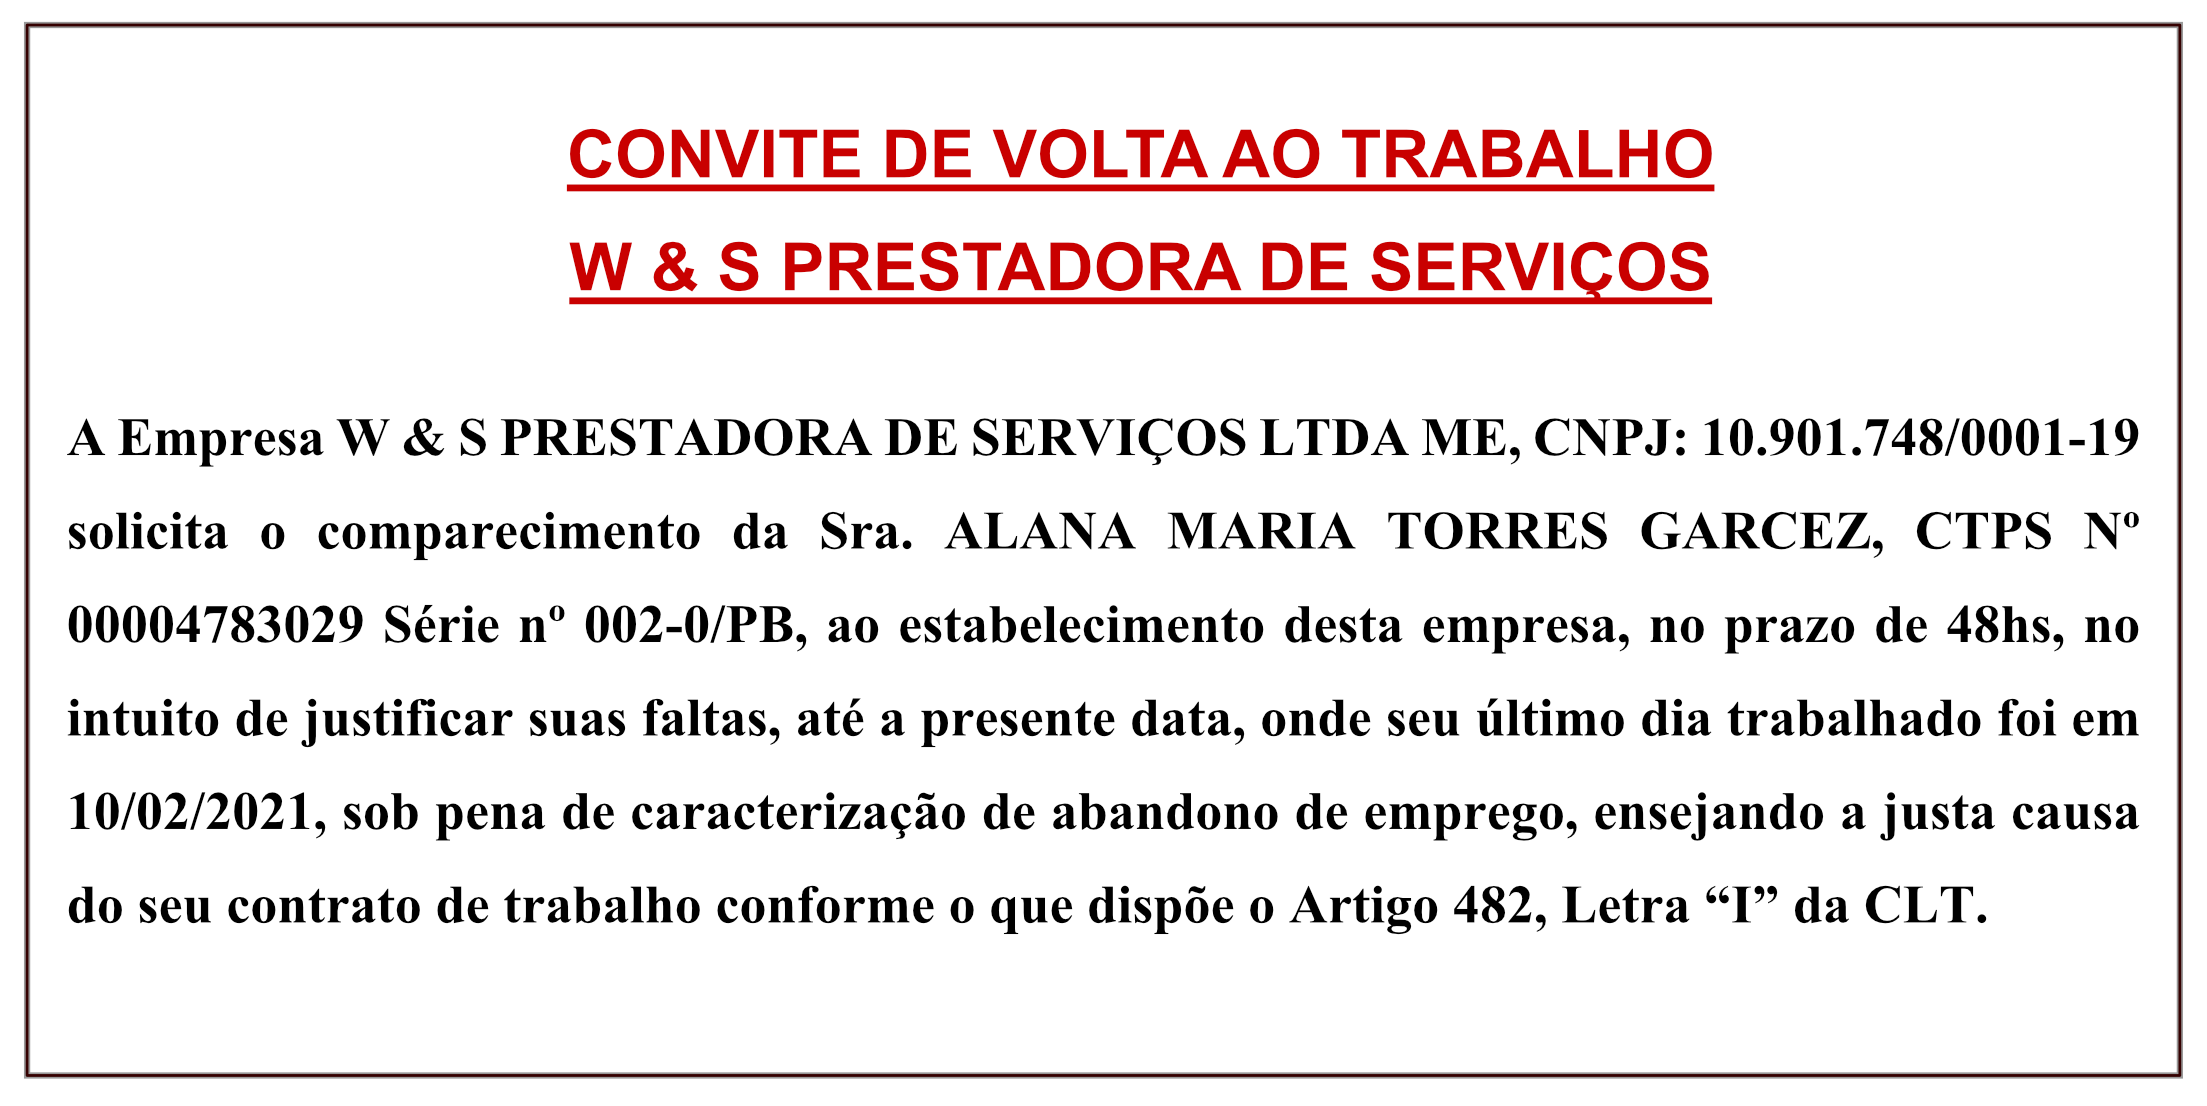 CONVITE DE VOLTA AO TRABALHO- W & S PRESTADORA DE SERVIÇOS LTDA ME